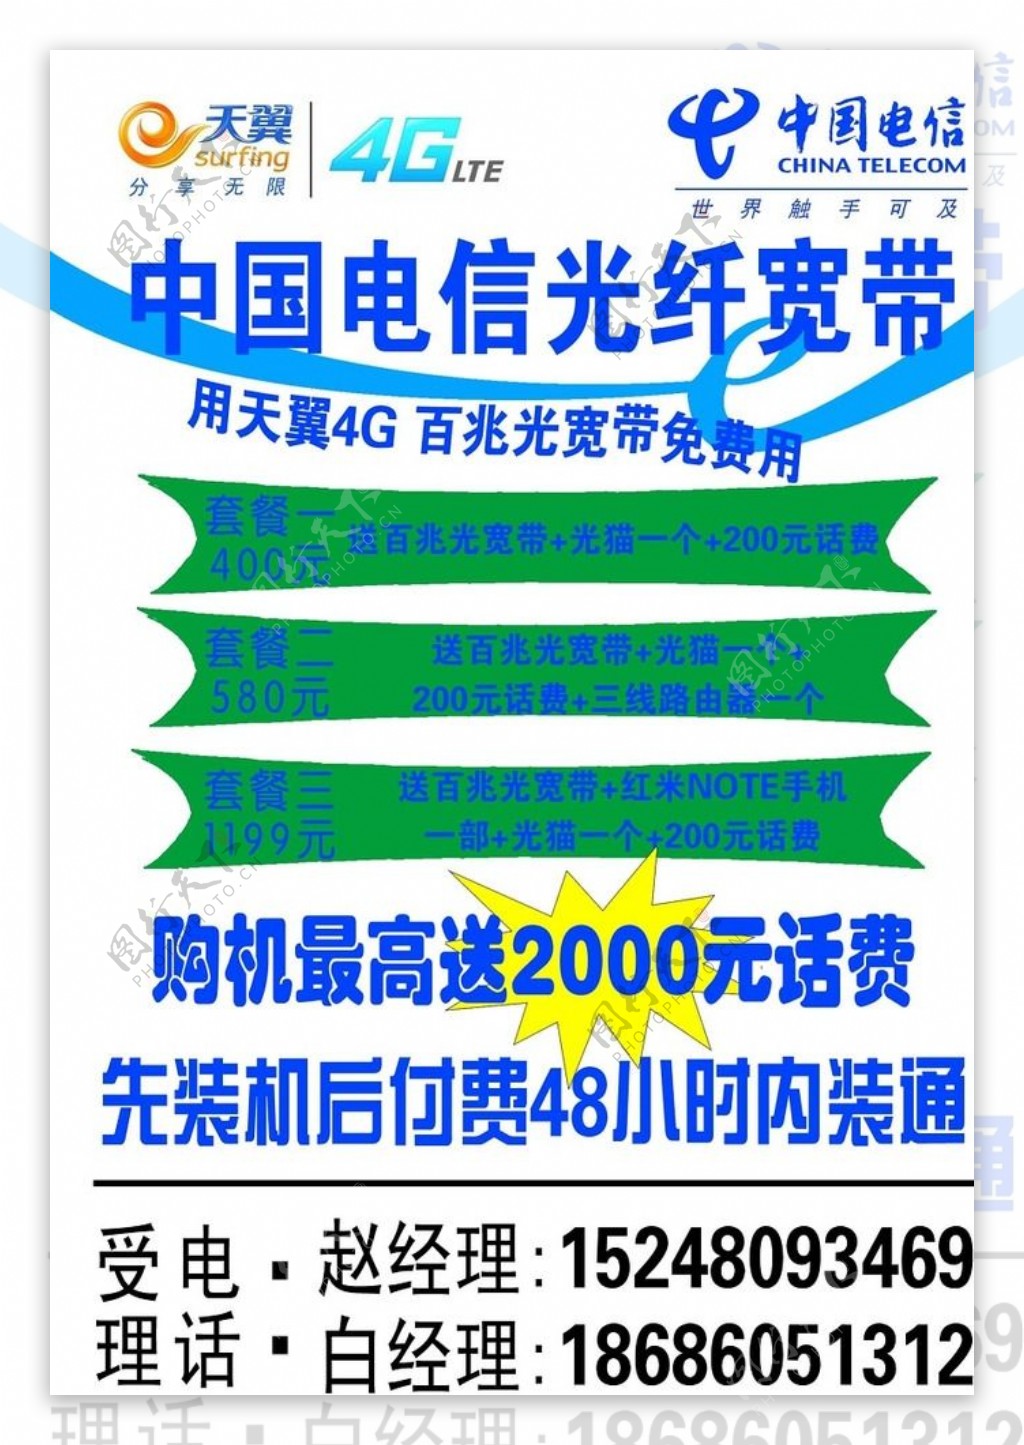 中国电信简易手机宣传单